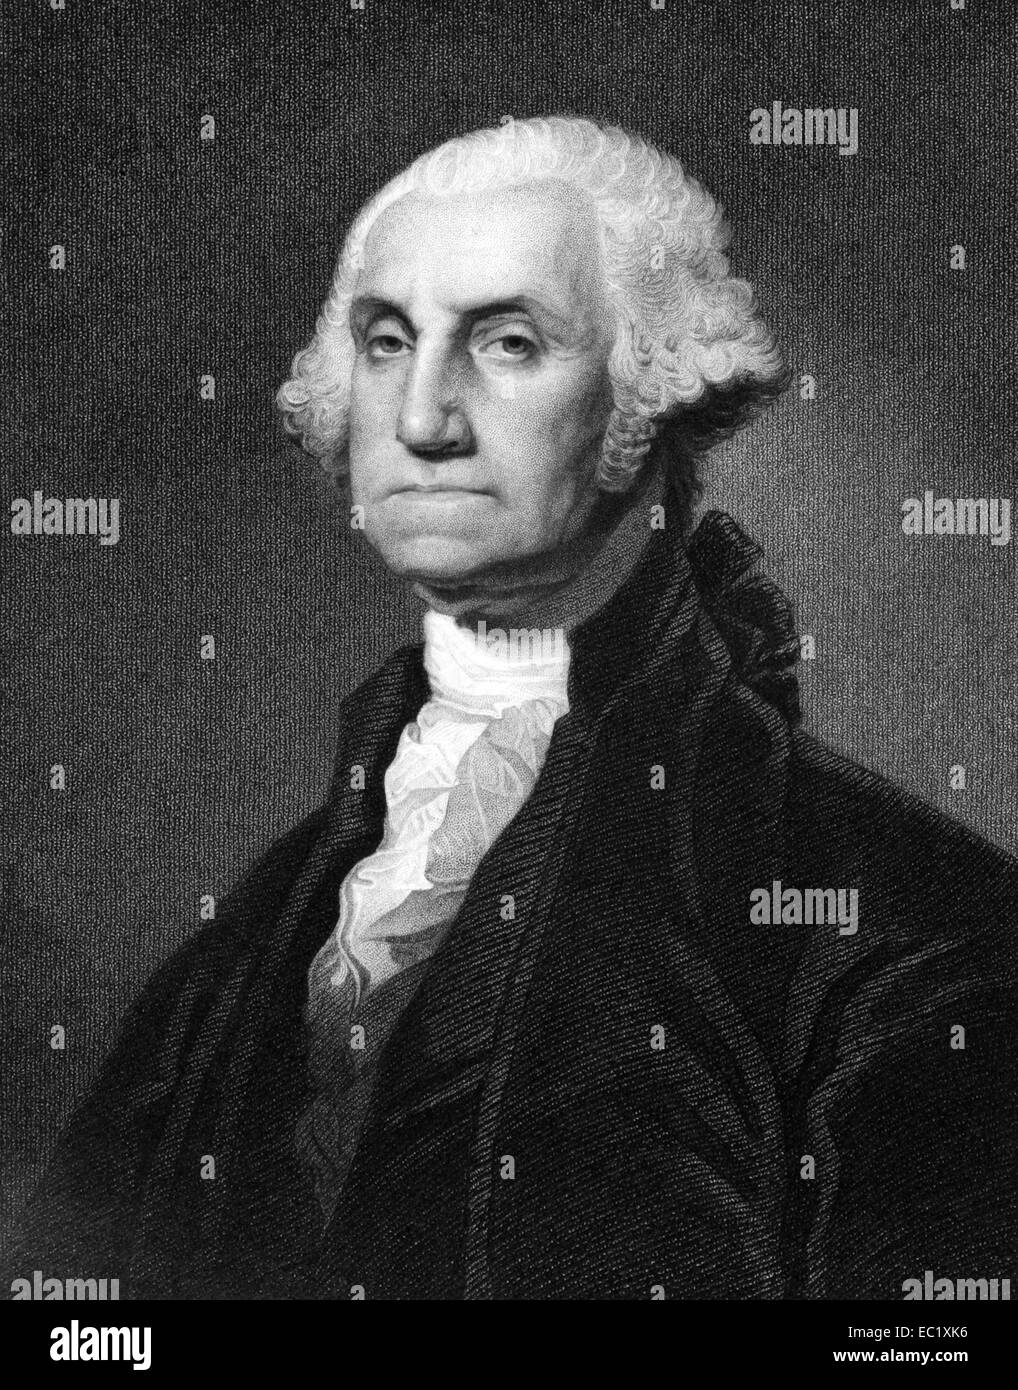 George Washington (1731-1799) auf Kupferstich aus dem Jahr 1873. Erster Präsident der Vereinigten Staaten während 1789-1797. Stockfoto